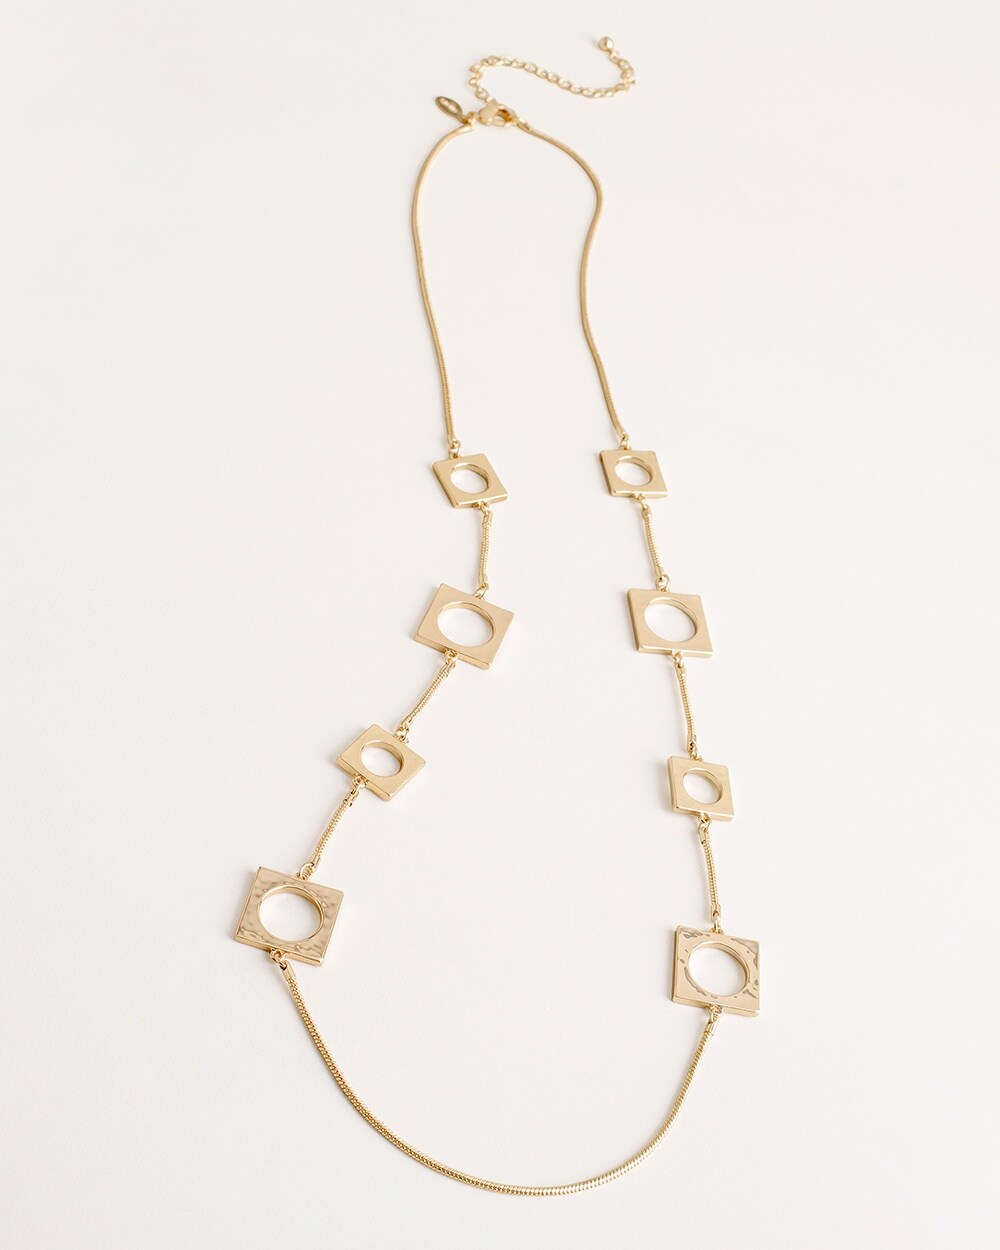 Gold-Tone Square Single-Strand Necklace